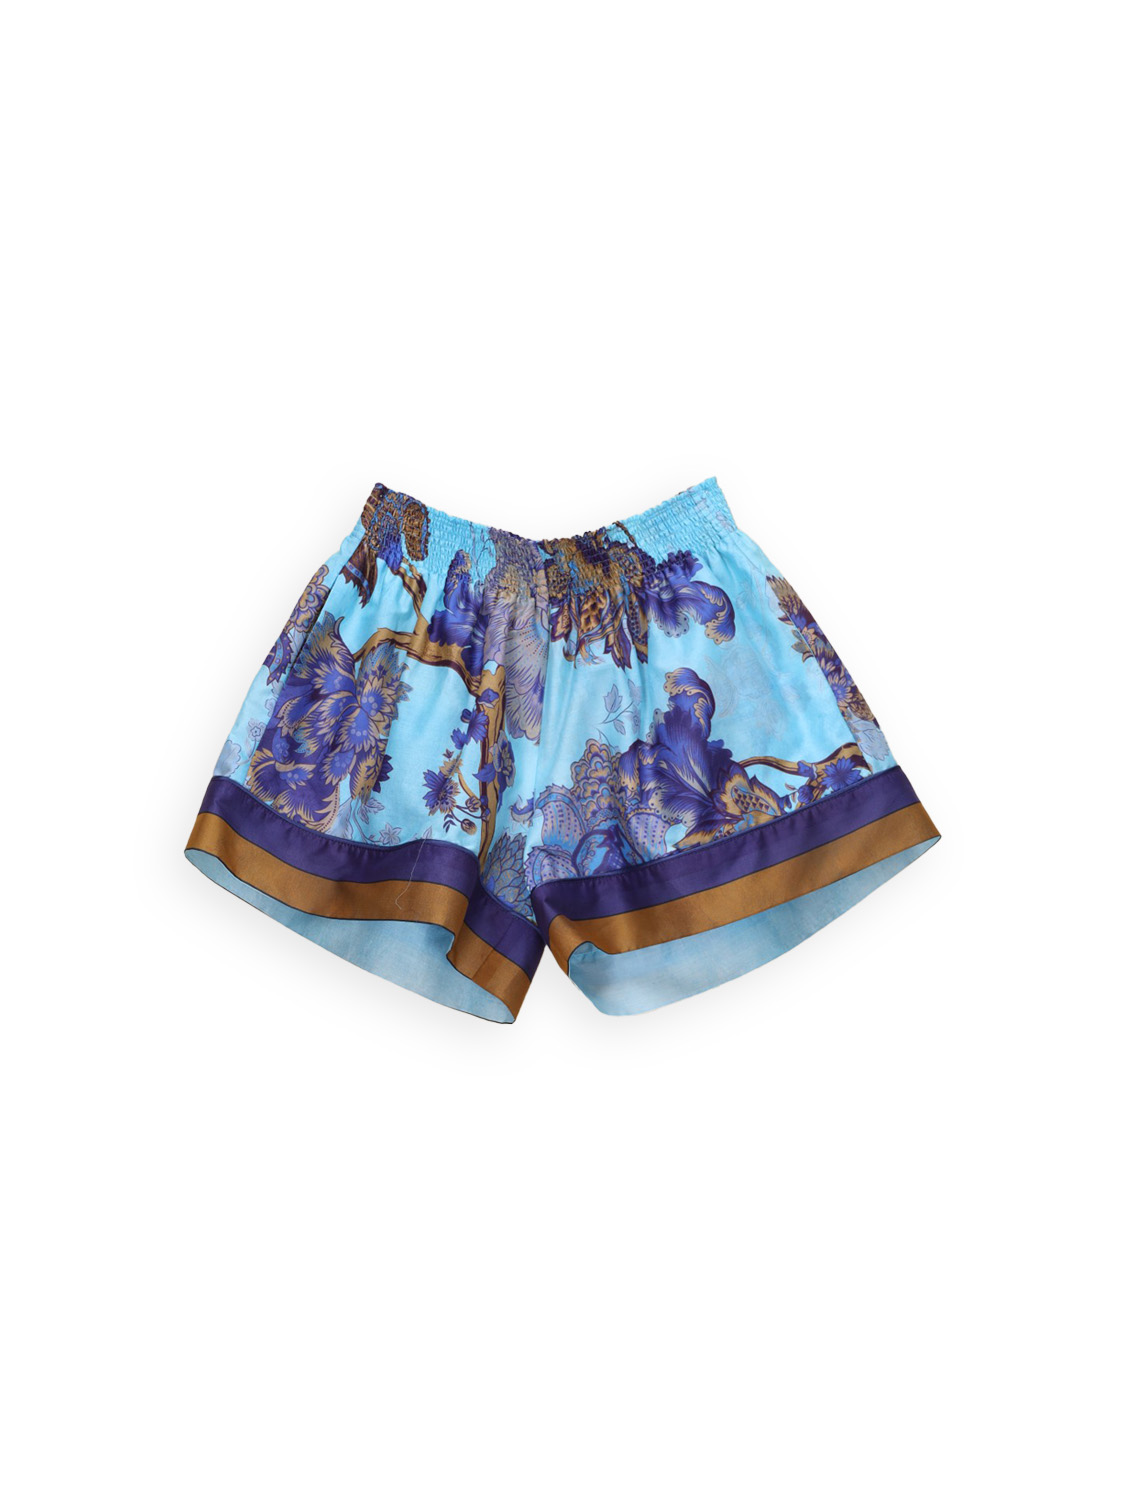 Baumwoll-Shorts mit Blumen Design   